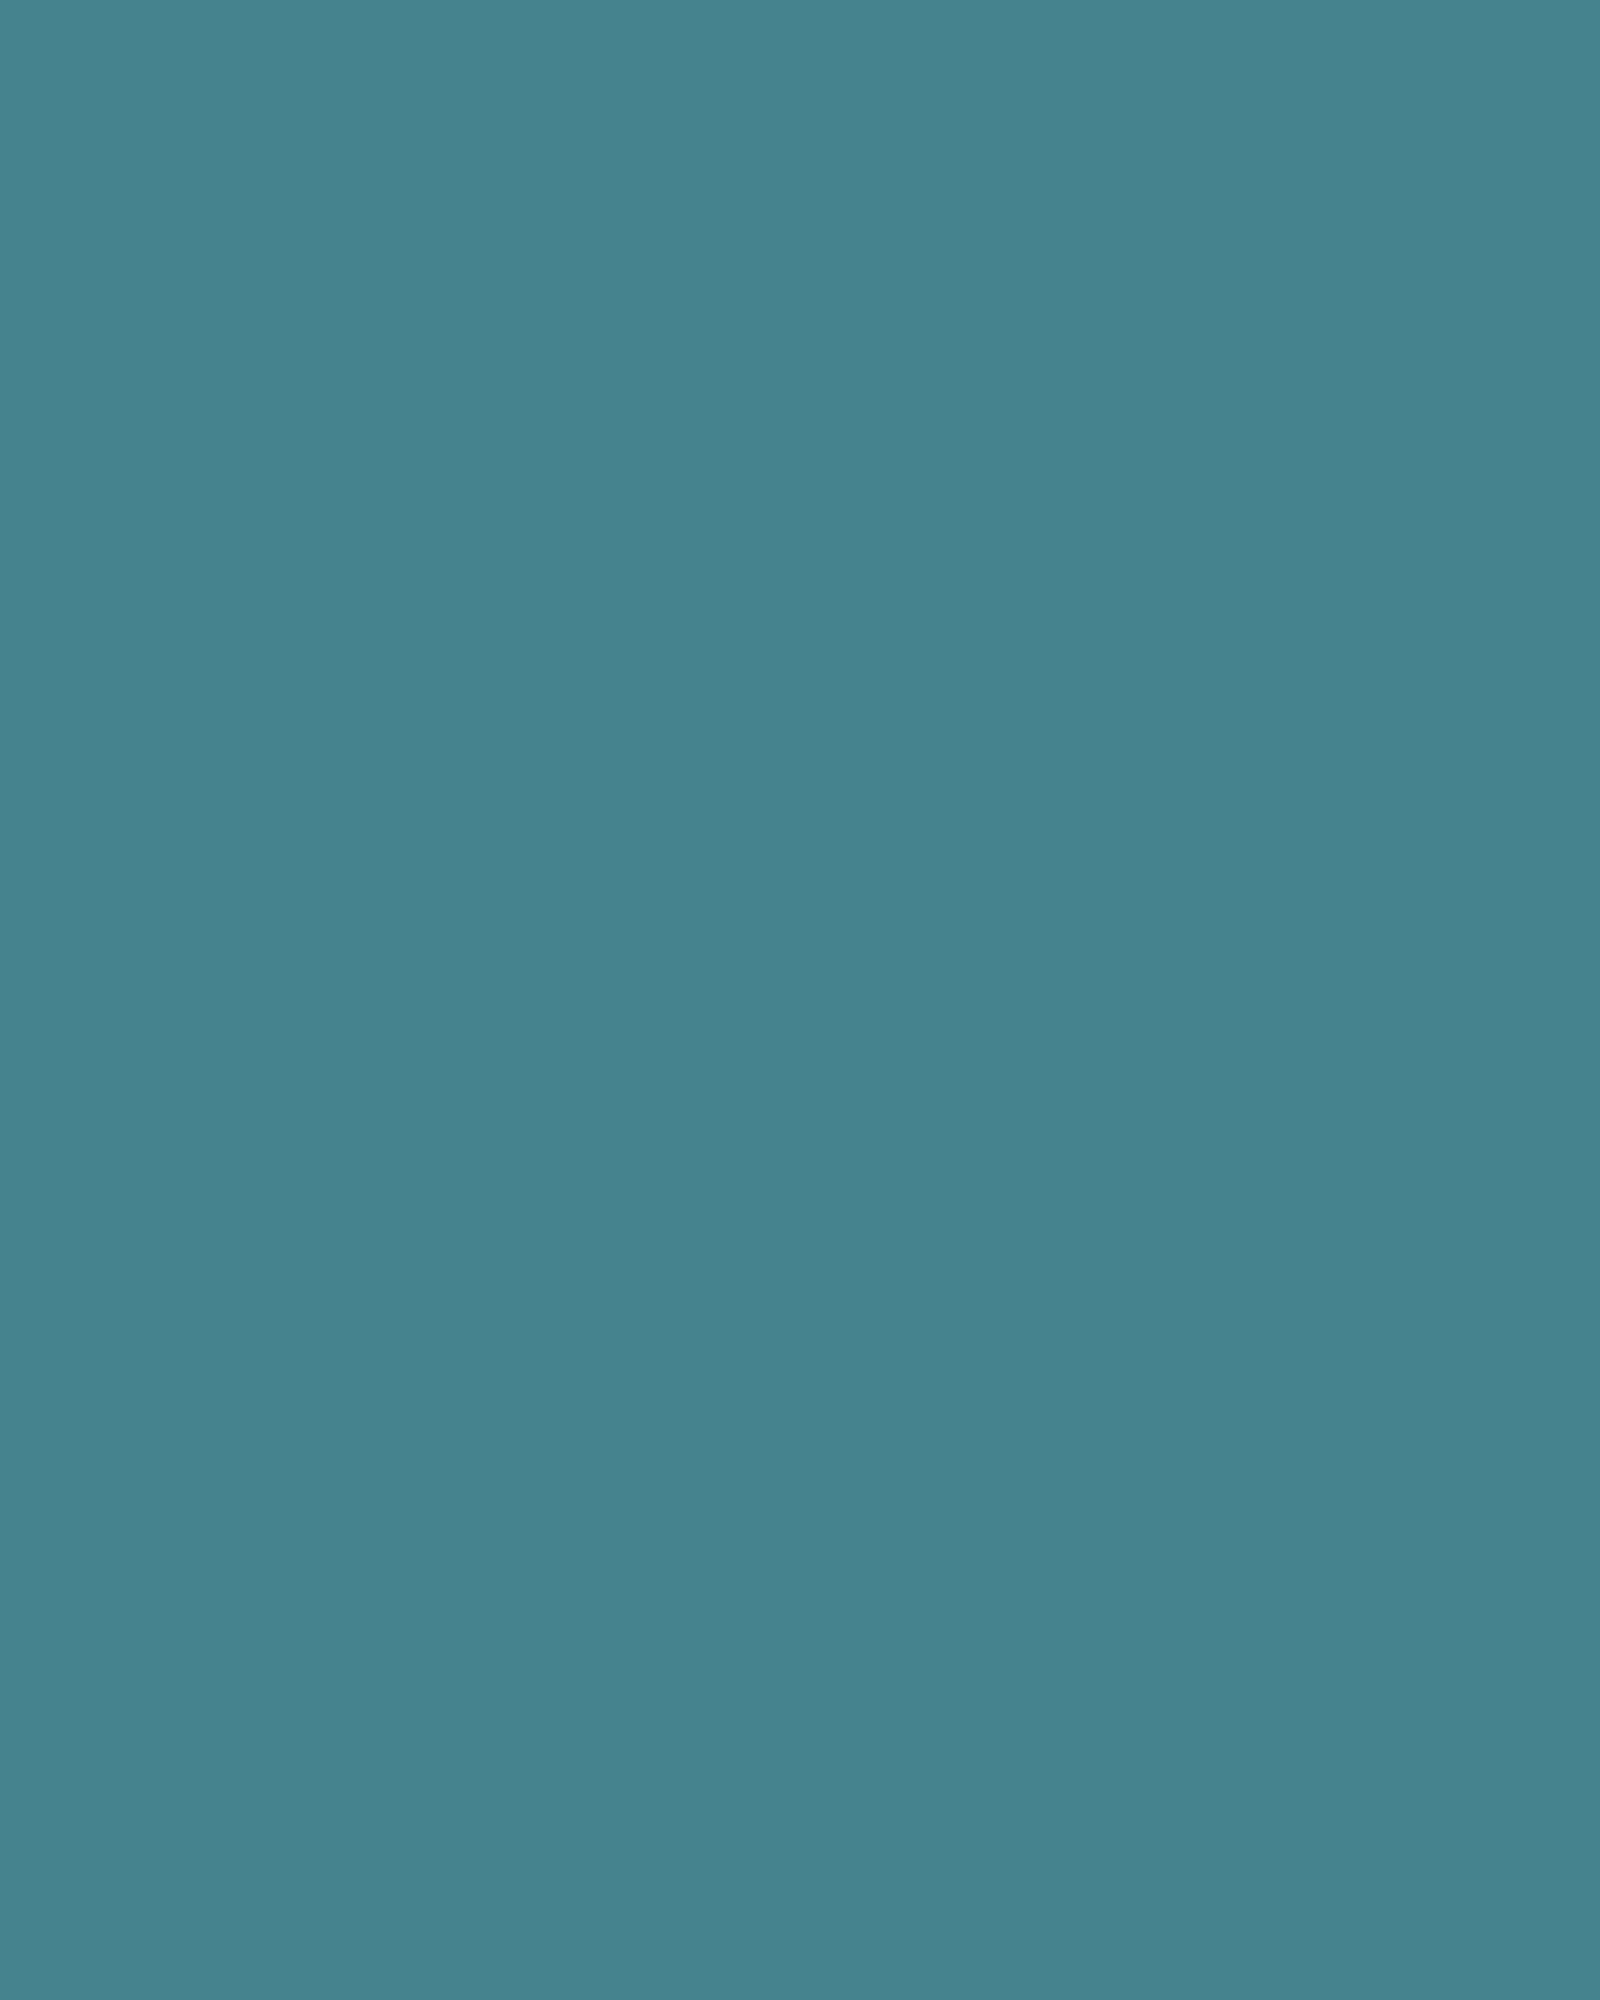 Анри Матисс. Зора на террасе (марокканский триптих) (фрагмент). 1912–1913. Государственный музей изобразительных искусств им. А.С. Пушкина, Москва